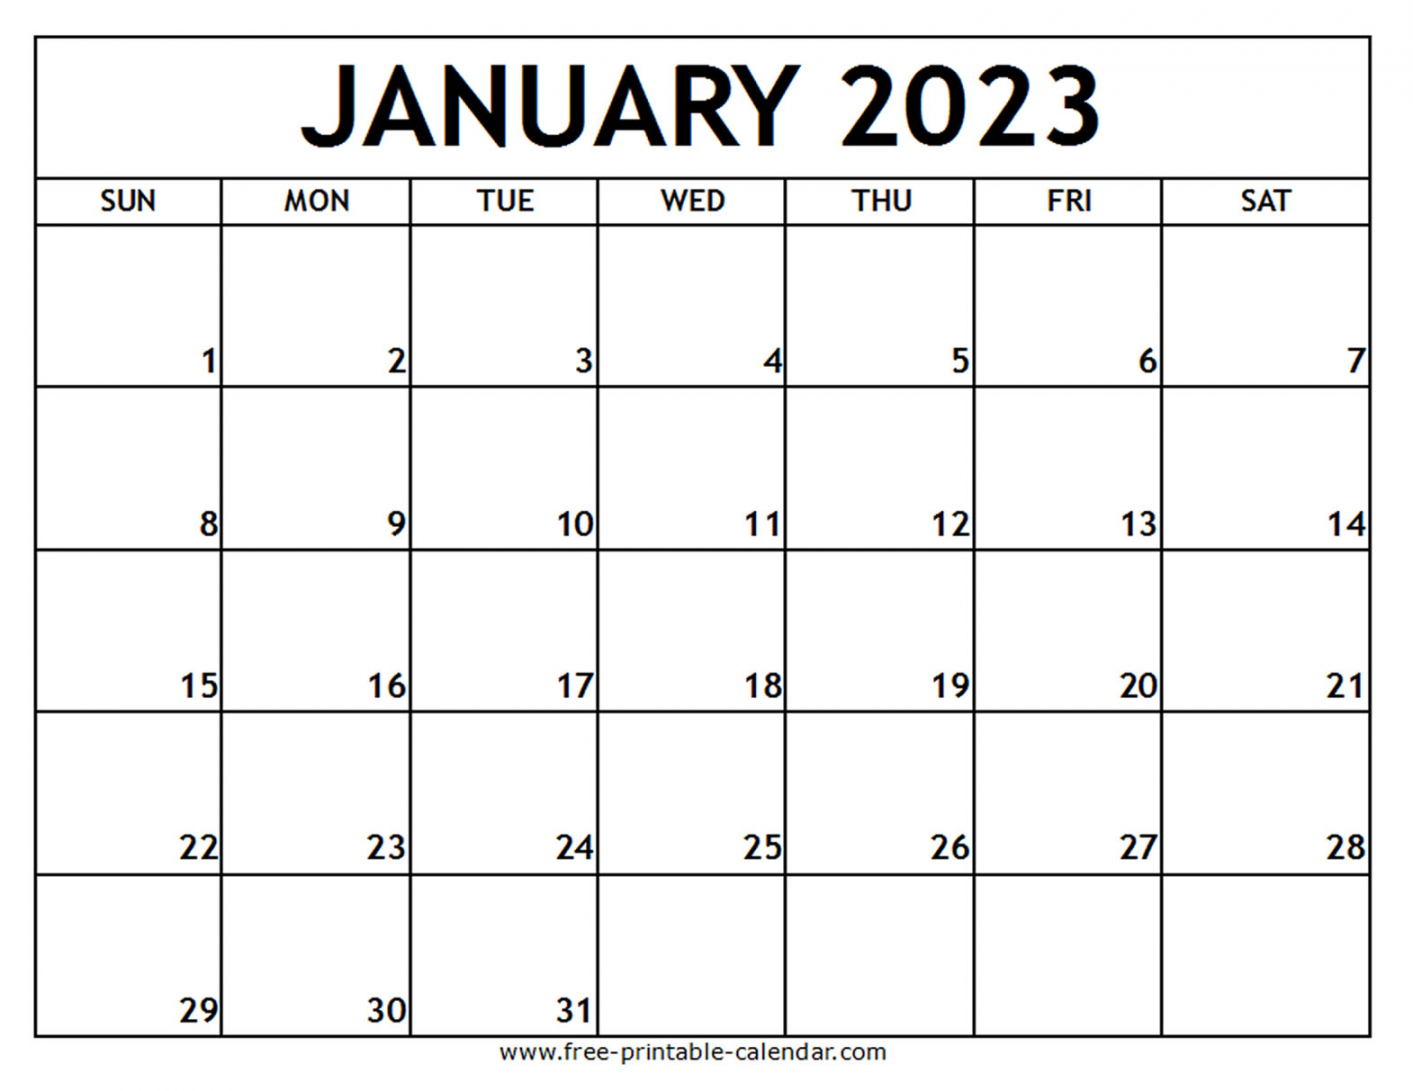 January 2023 Printable Calendar Free - Printable - January  Printable Calendar - Free-printable-calendar